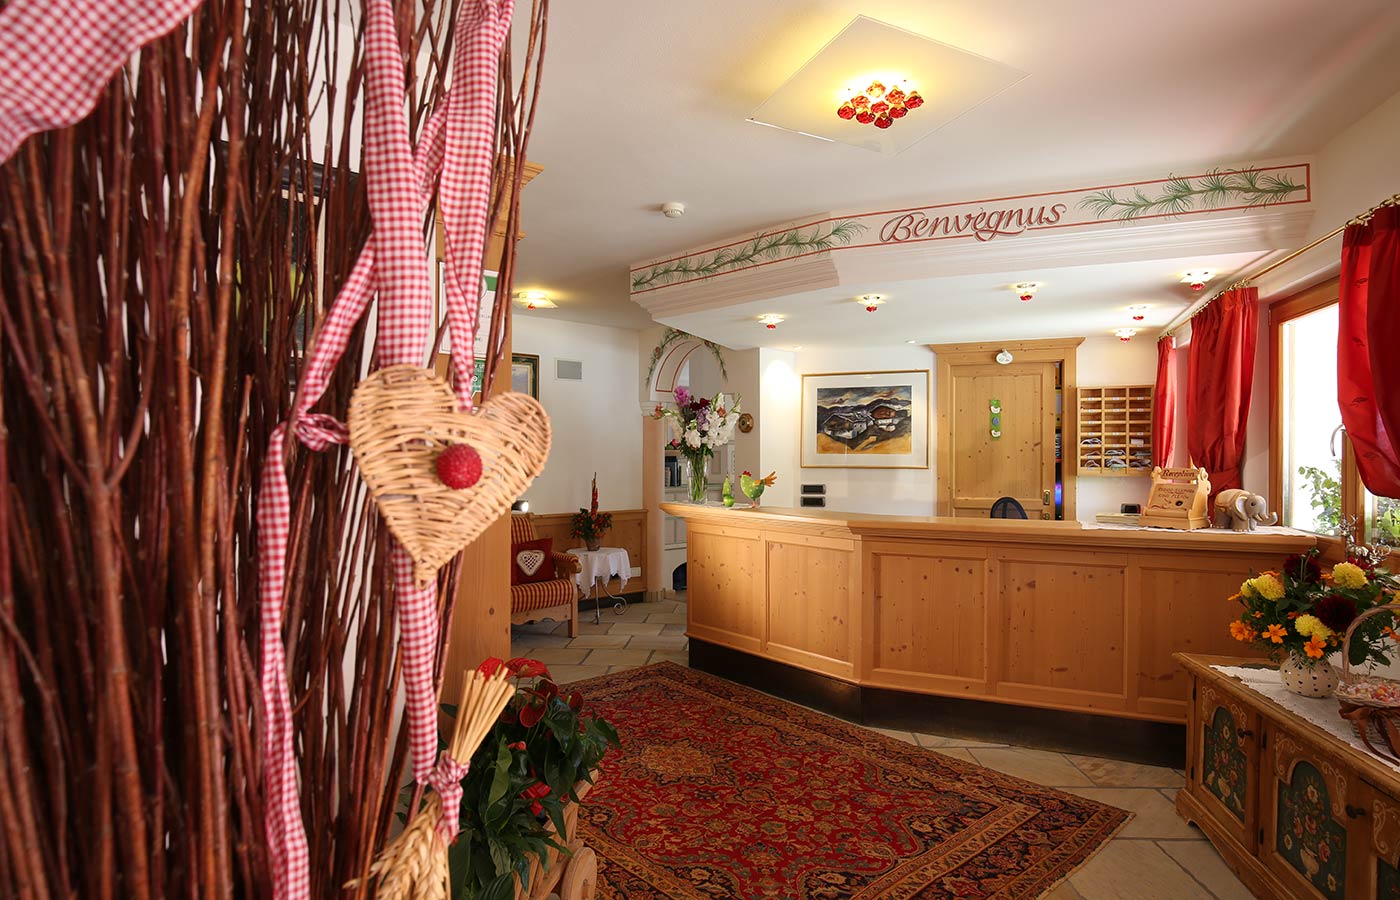 Der Empfang des Hotels Mesdì mit Holzeinrichtung, Blumen auf dem Empfangstisch und einem Teppich auf dem Boden